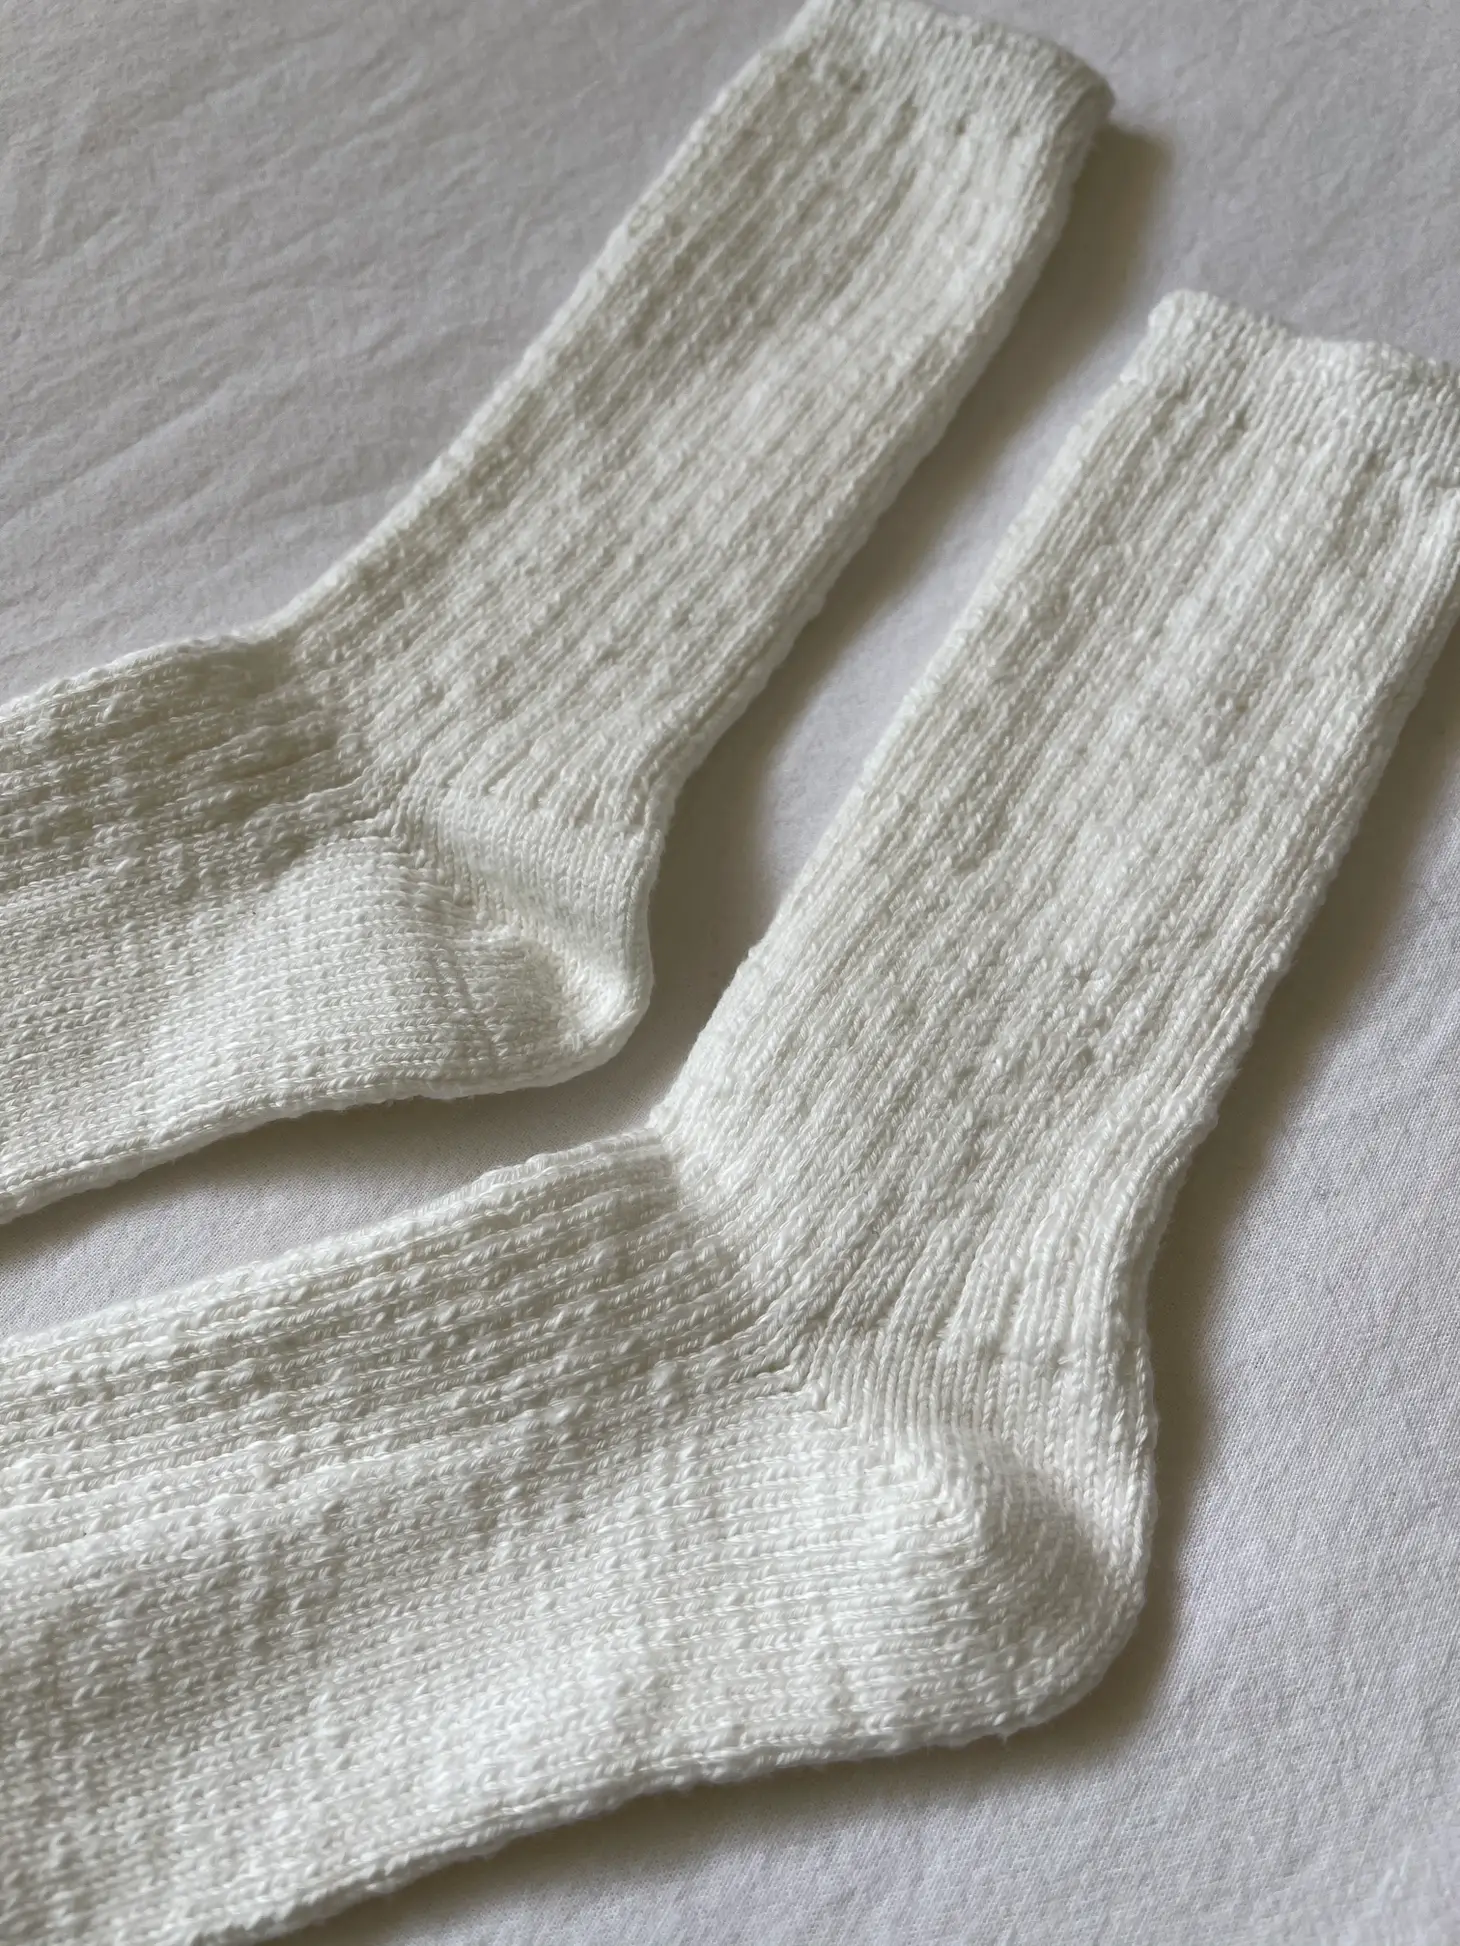 Le Bon Shoppe Cottage Socks - White Linen Accessories - Other Accessories - Socks by Le Bon Shoppe | Grace the Boutique